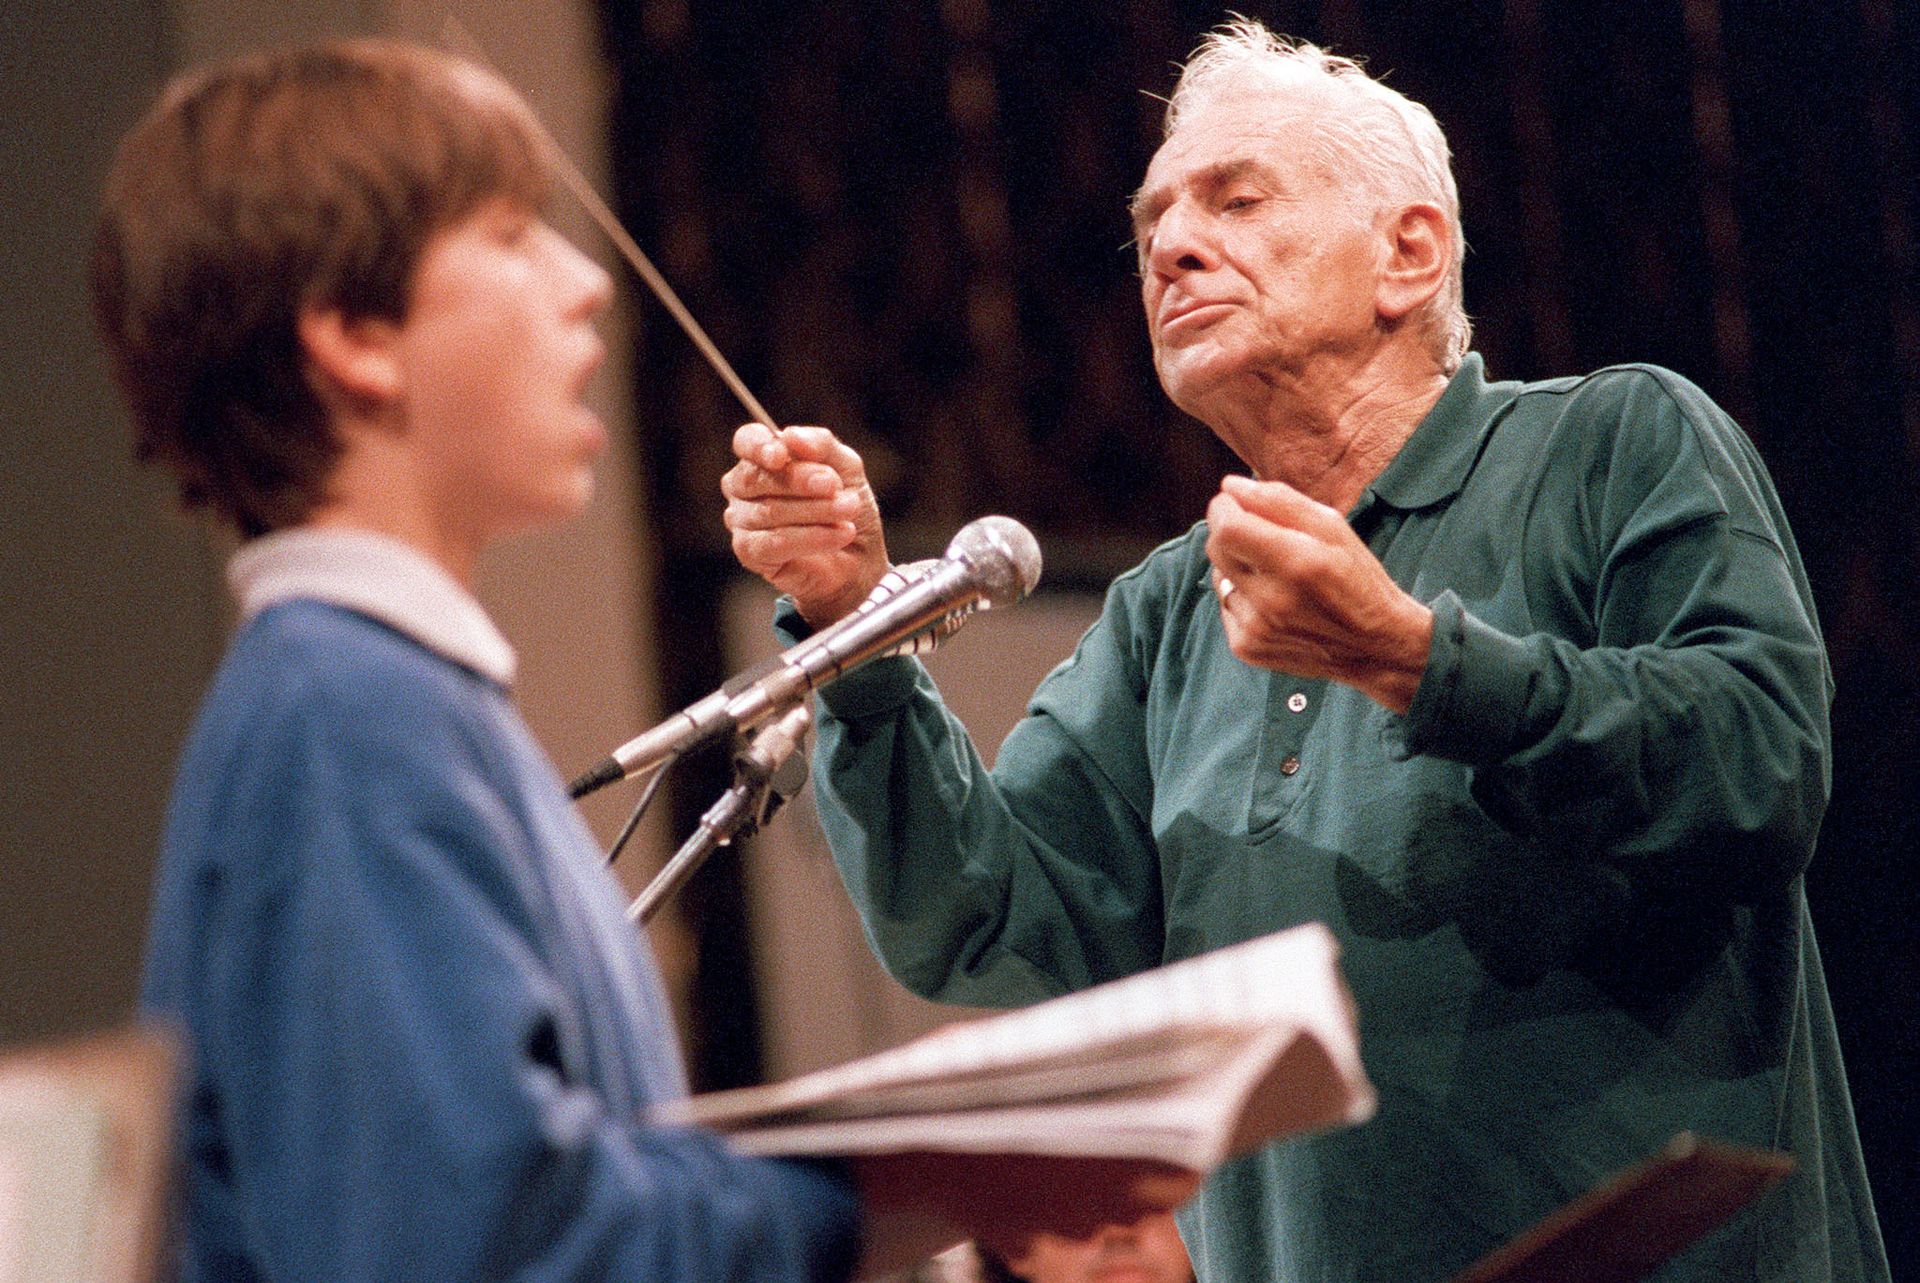 La passion de la transmission est forte chez Bernstein. Photo prise à Varsovie en 1989 lors d'une répétition 